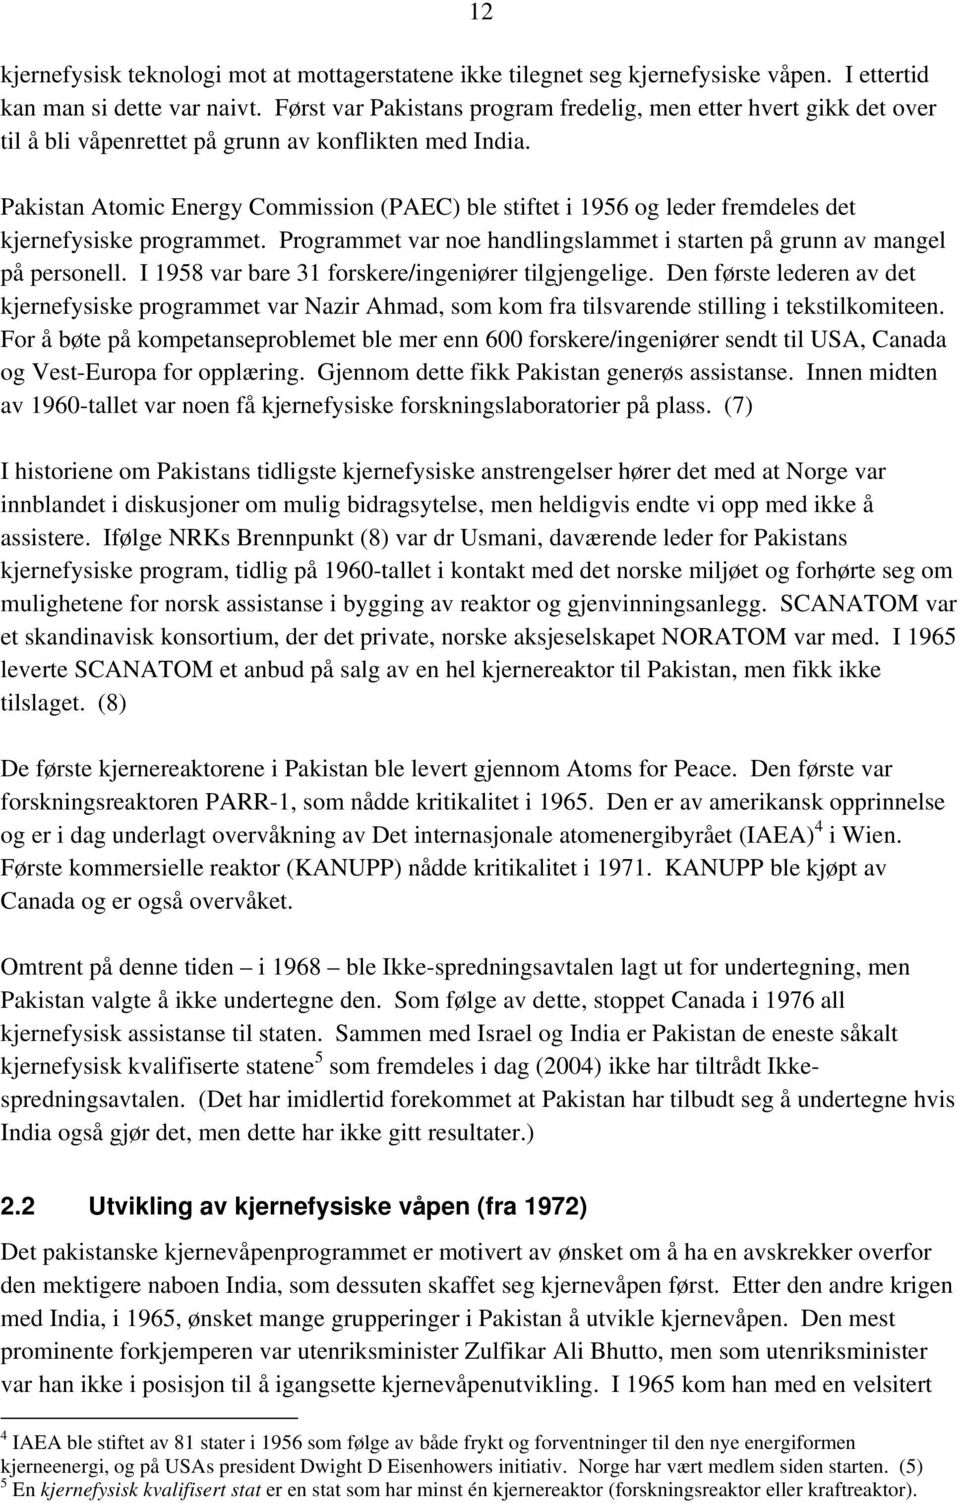 Pakistan Atomic Energy Commission (PAEC) ble stiftet i 1956 og leder fremdeles det kjernefysiske programmet. Programmet var noe handlingslammet i starten på grunn av mangel på personell.